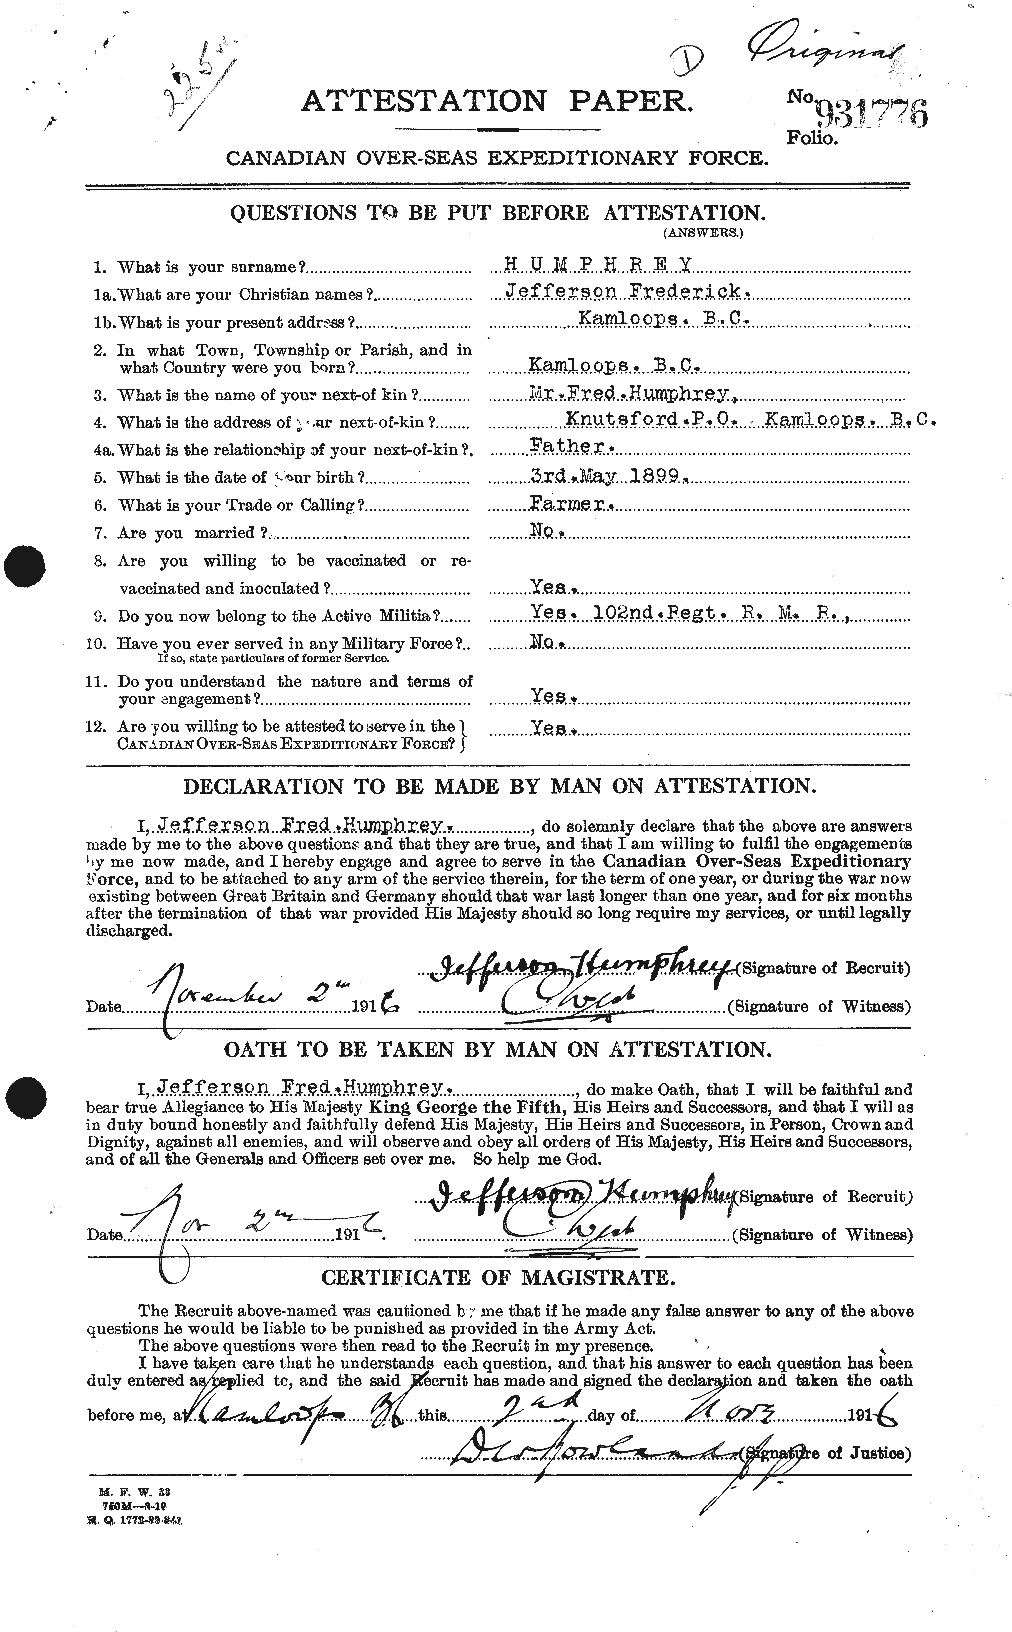 Dossiers du Personnel de la Première Guerre mondiale - CEC 407413a